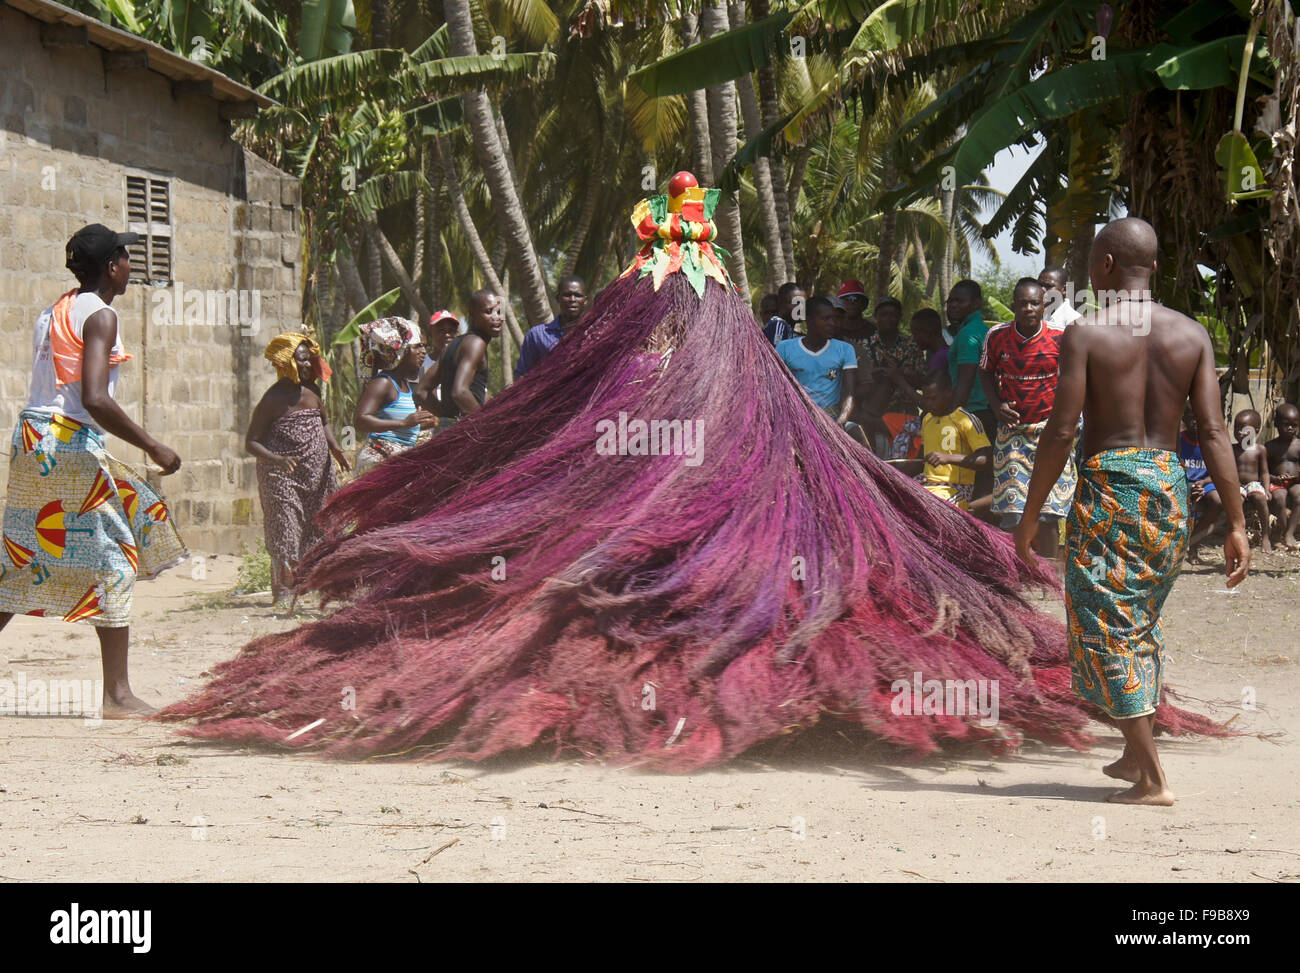 Zangbeto Ceremony In Heve Grand Popo Village Benin Stock Photo Alamy